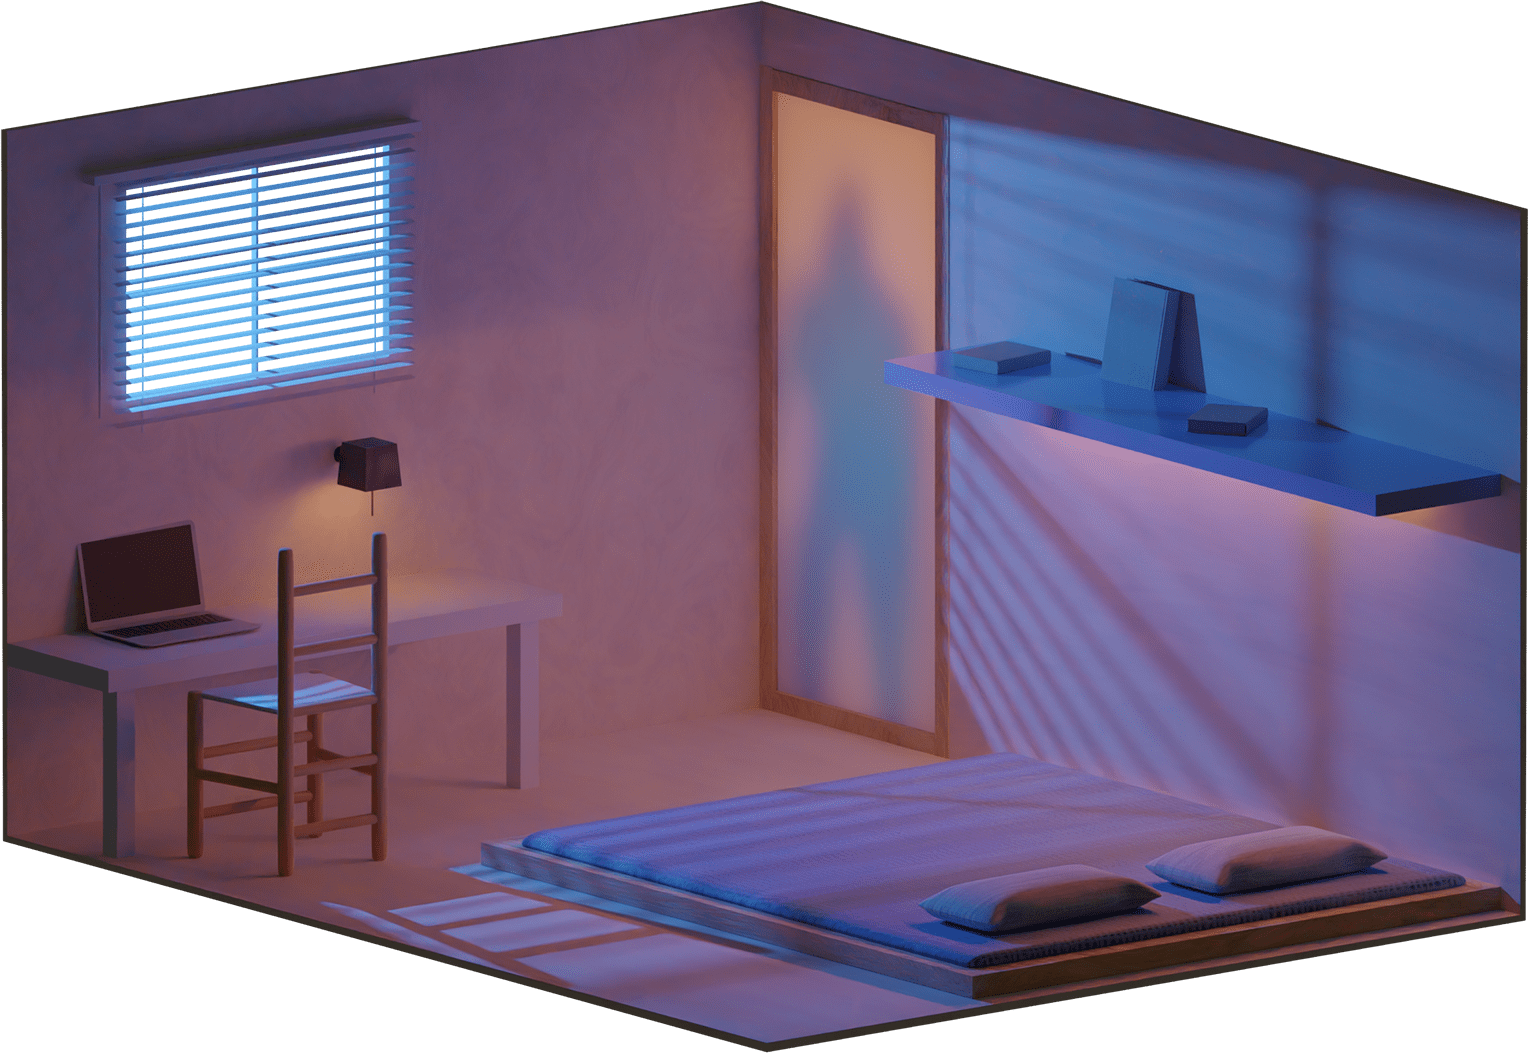 Apprentissage du logiciel Blender avec la modélisation d'une chambre en 3D